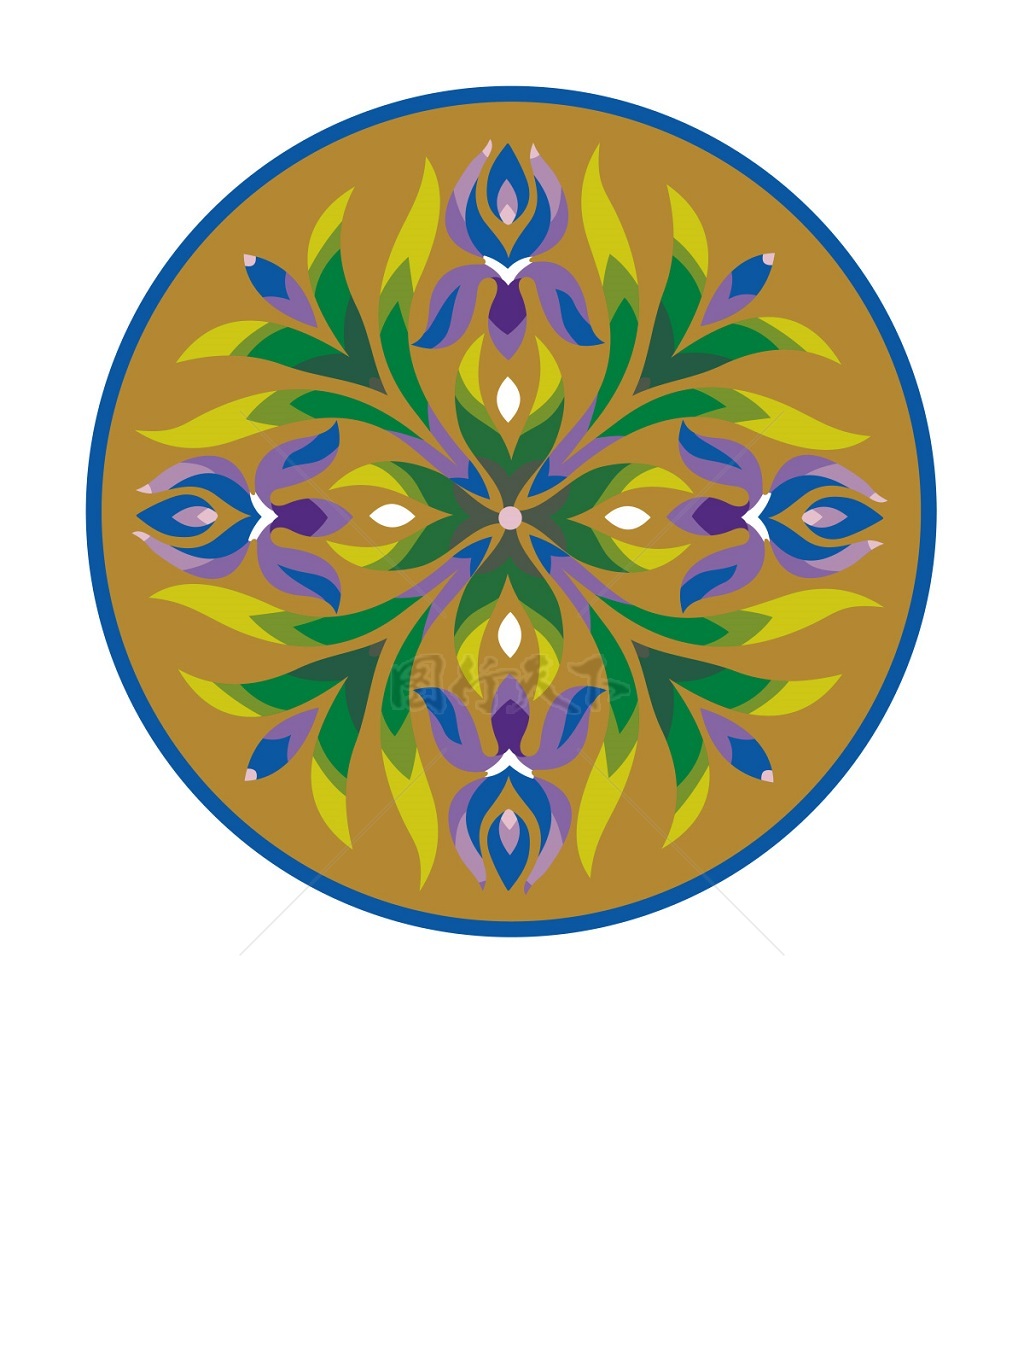  传统 欧式俄式 圆形花卉图案背景贴图 棕黄底曼陀花